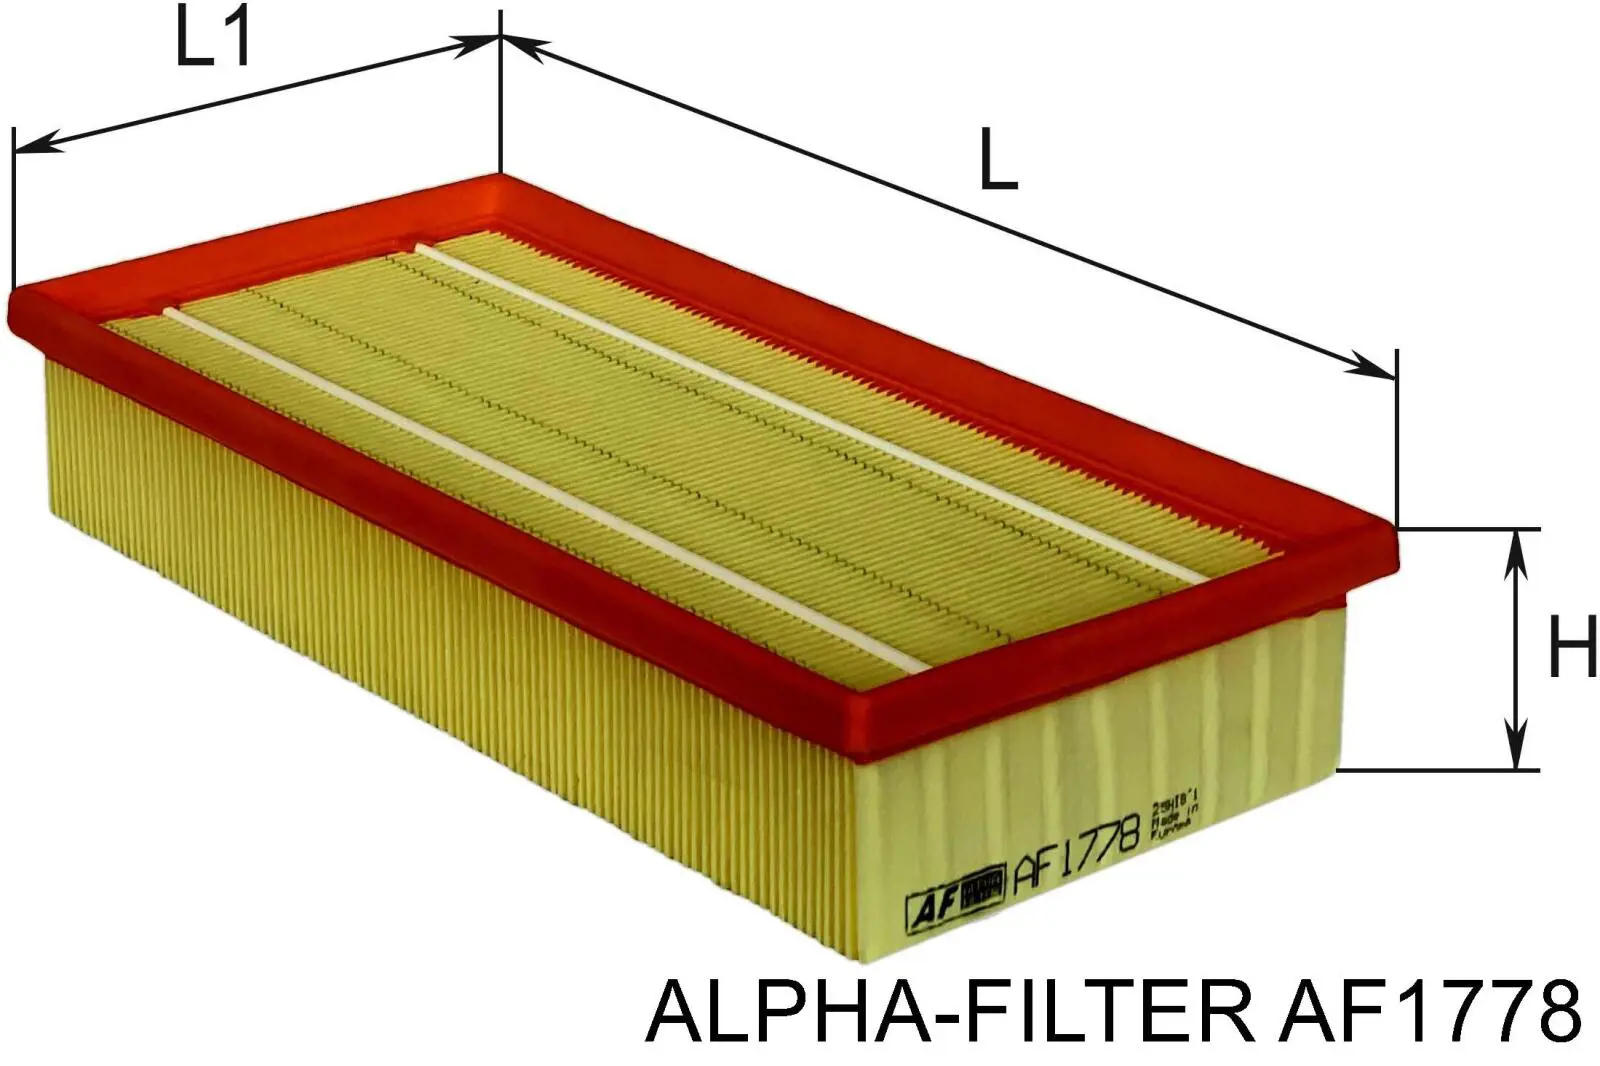 AF1778 Alpha-filter воздушный фильтр